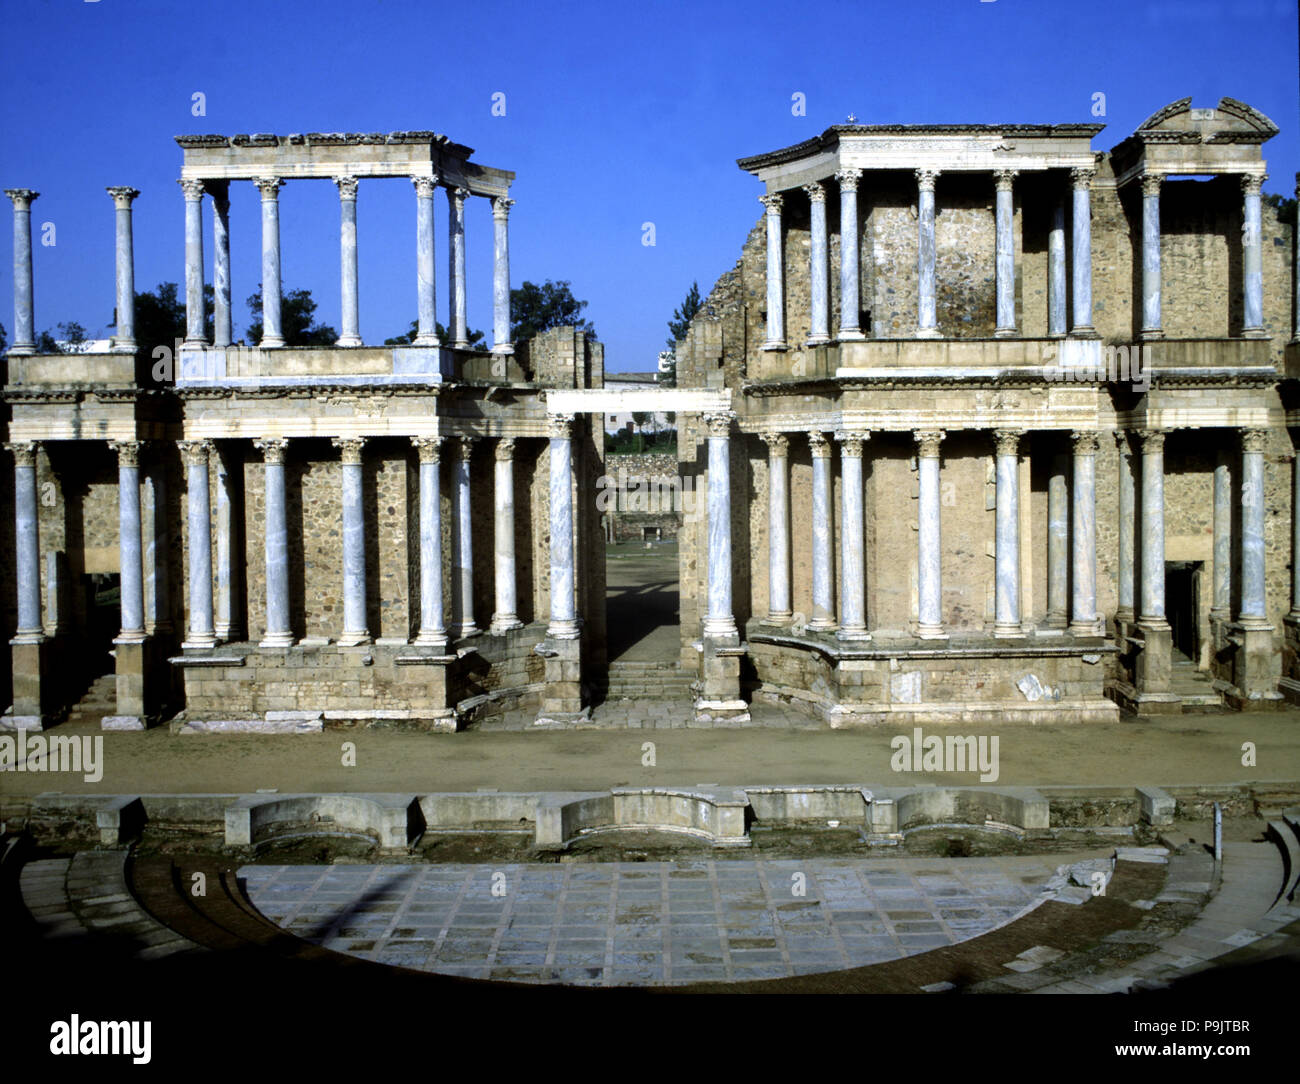 Blick auf die Bühne des römischen Theaters von Merida, die besteht aus zwei Etagen mit Säulen, 24 v. Chr. Stockfoto